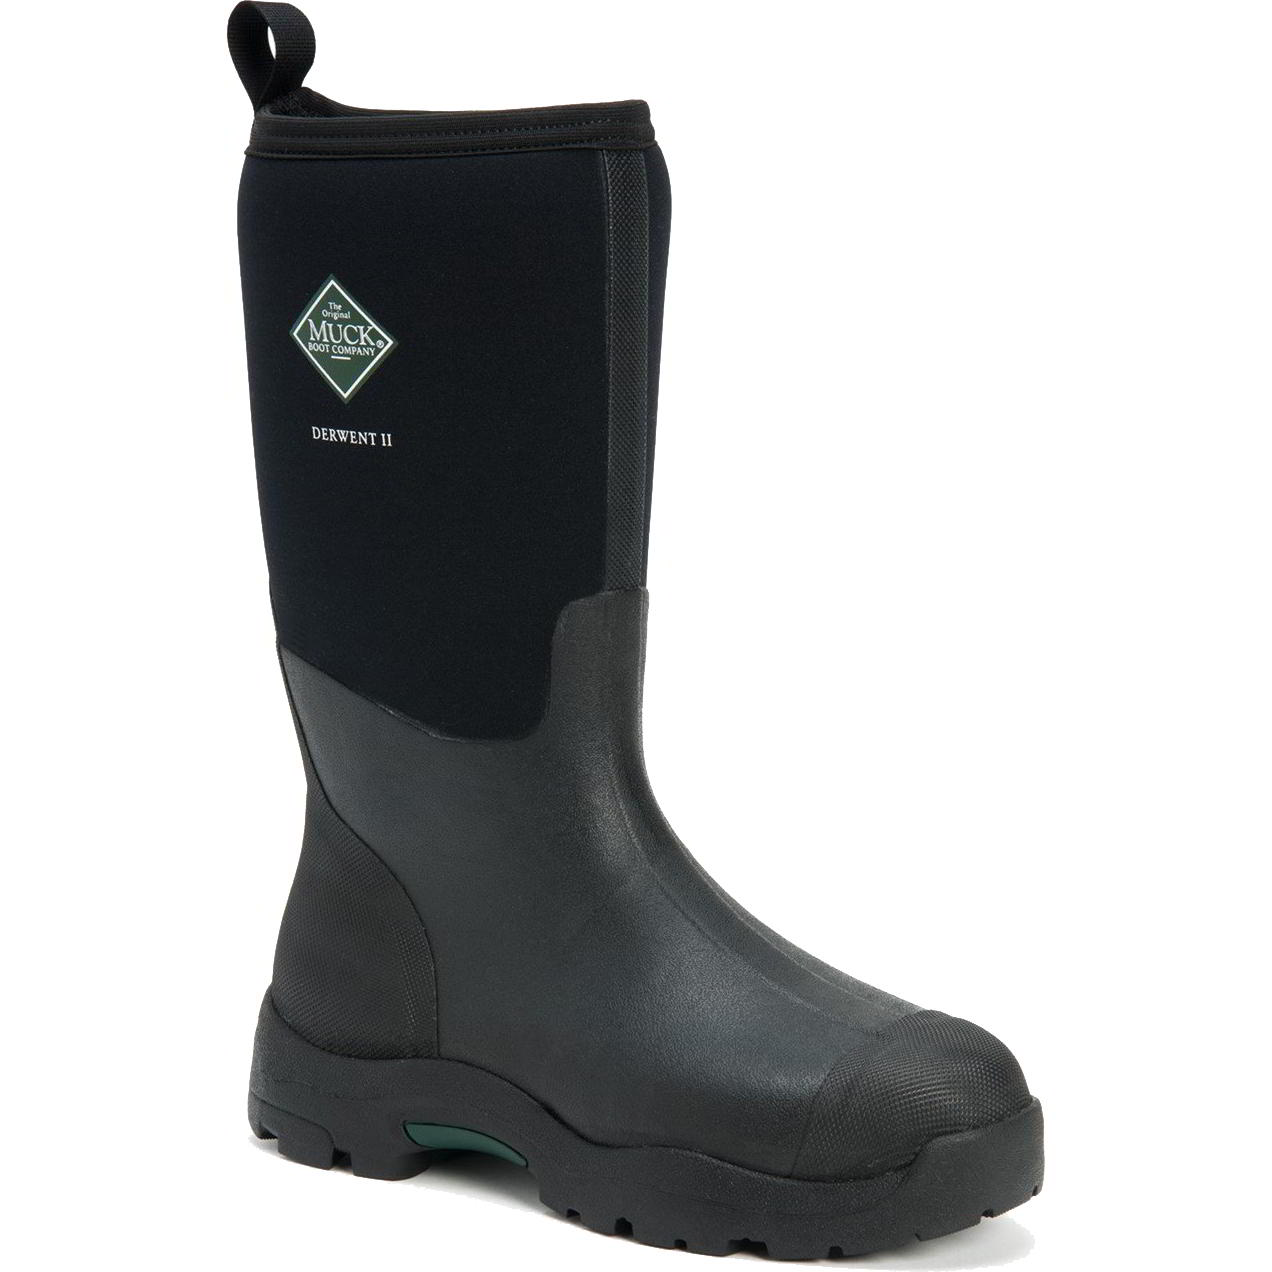 Muck Boots Mens Derwent II Neoprene Wellies Rain - UK 8 Black 2951